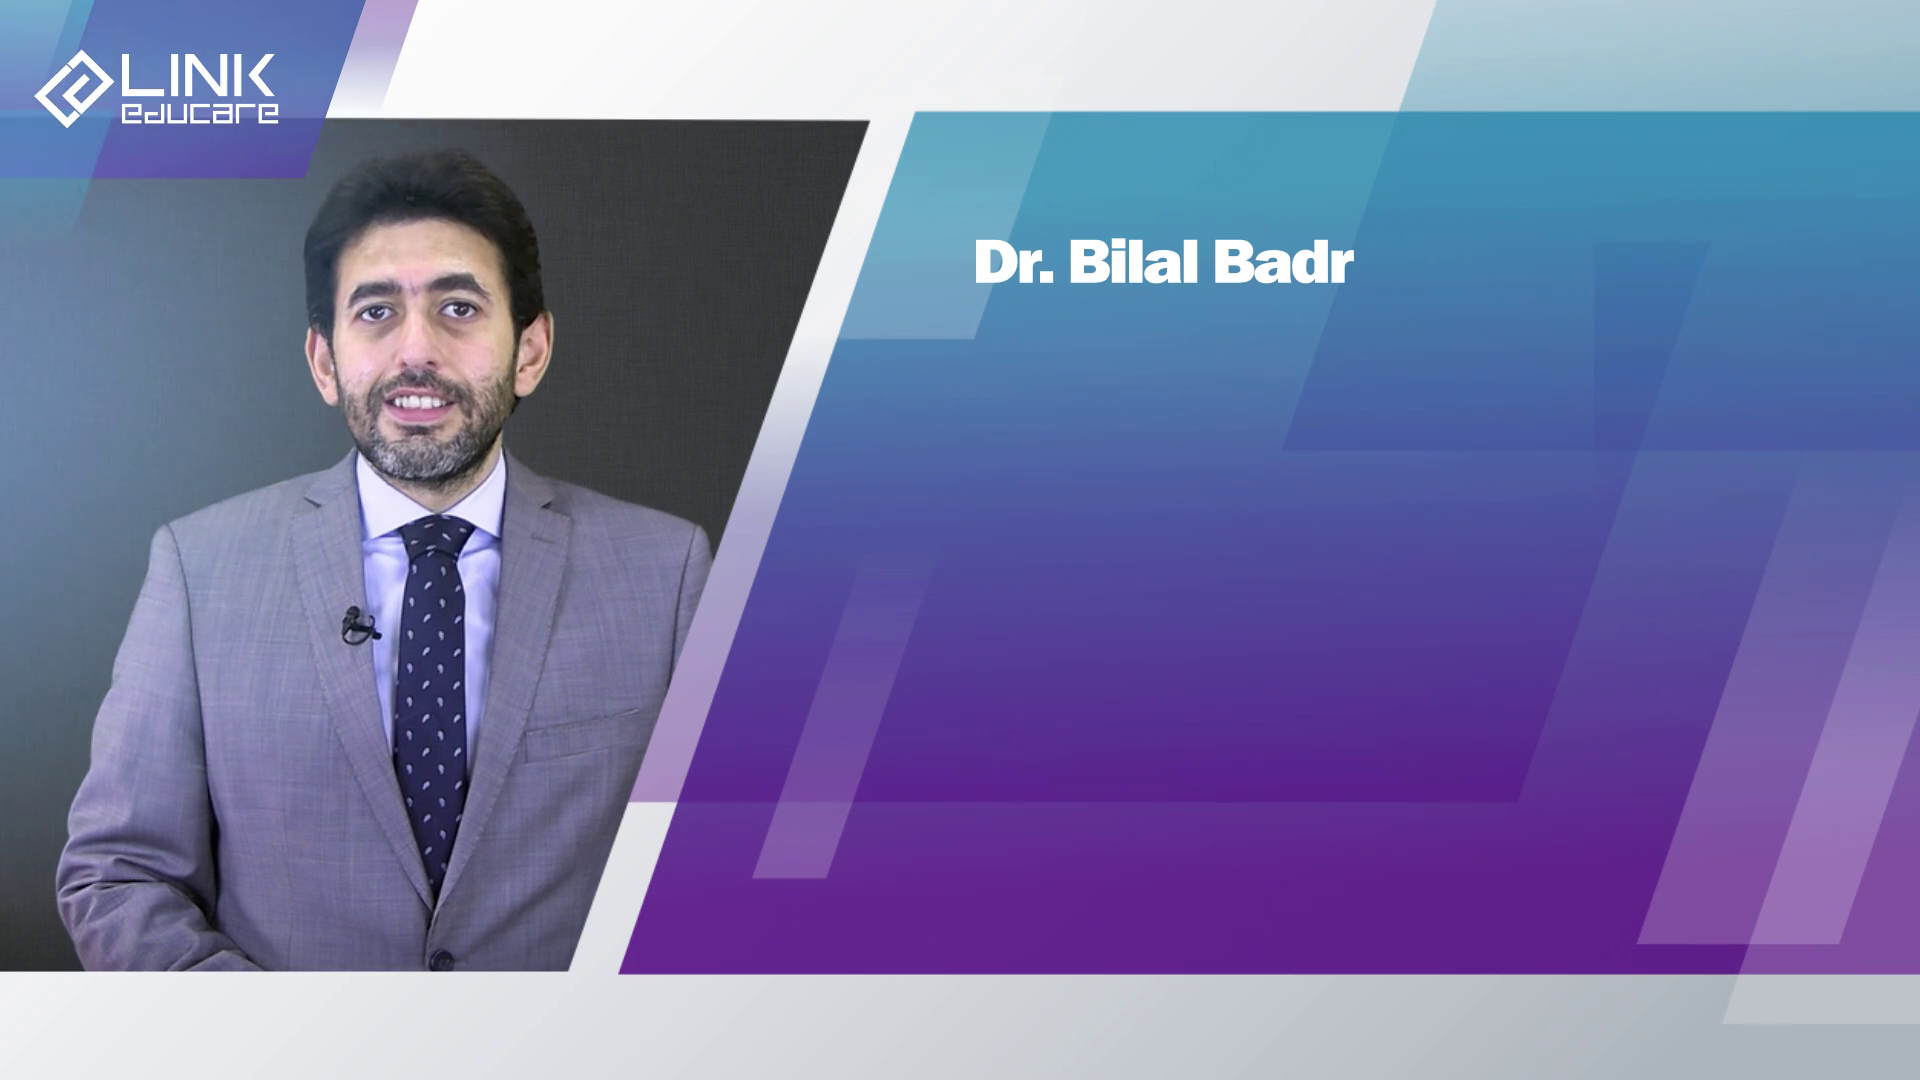 Dr. Bilal Badr